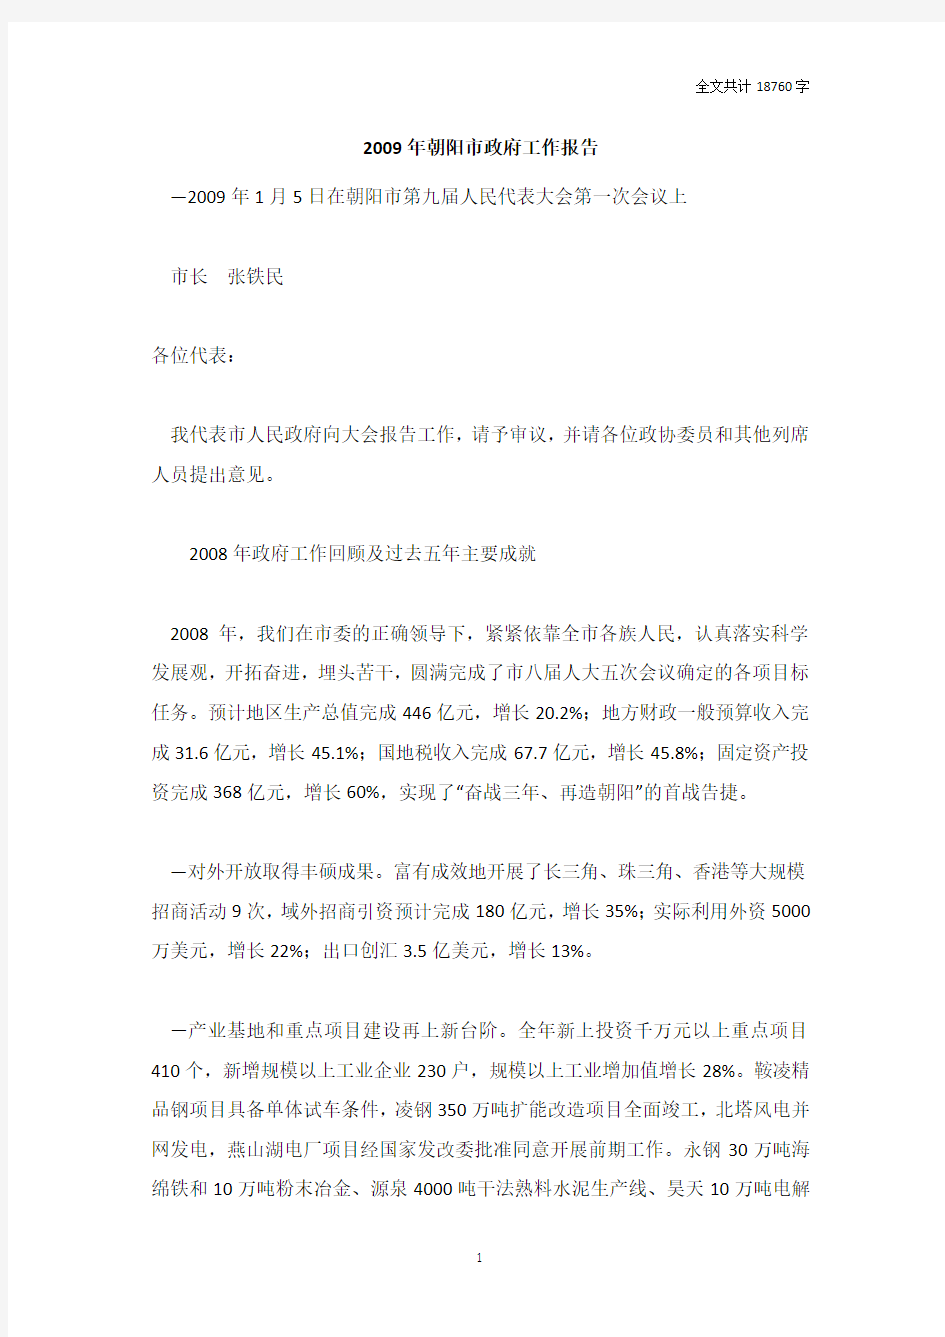 2009年朝阳市政府工作报告[全文]_DOC版